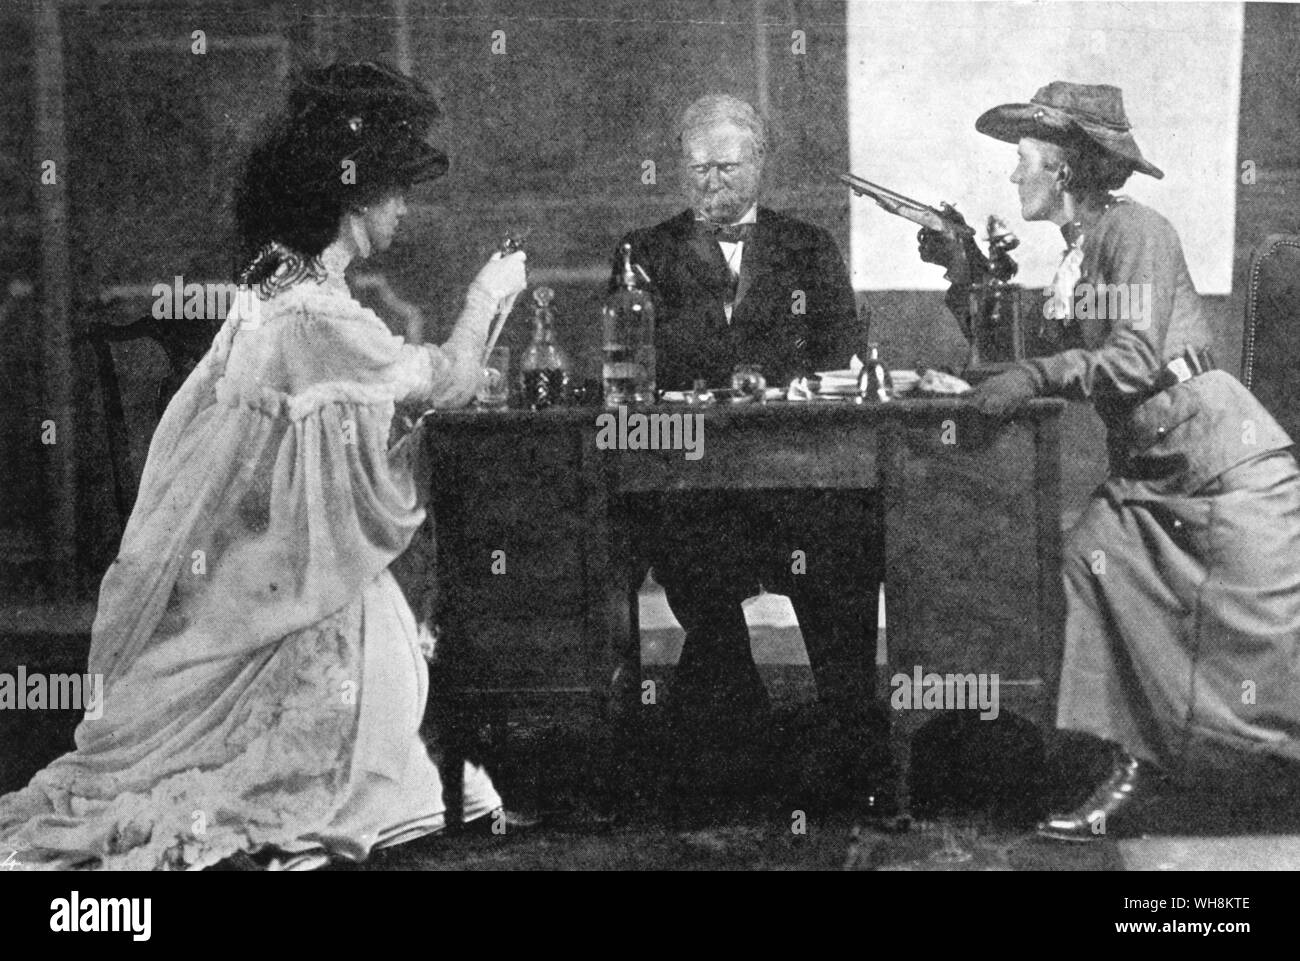 Eine Szene von Presseausschnitten ein Stück von George Bernard Shaw für die Londoner Gesellschaft der Frauenwahlrecht geschrieben, Verbot von der Kammerherr aber privat am königlichen Hof - 9. Juli 1909 produziert Stockfoto